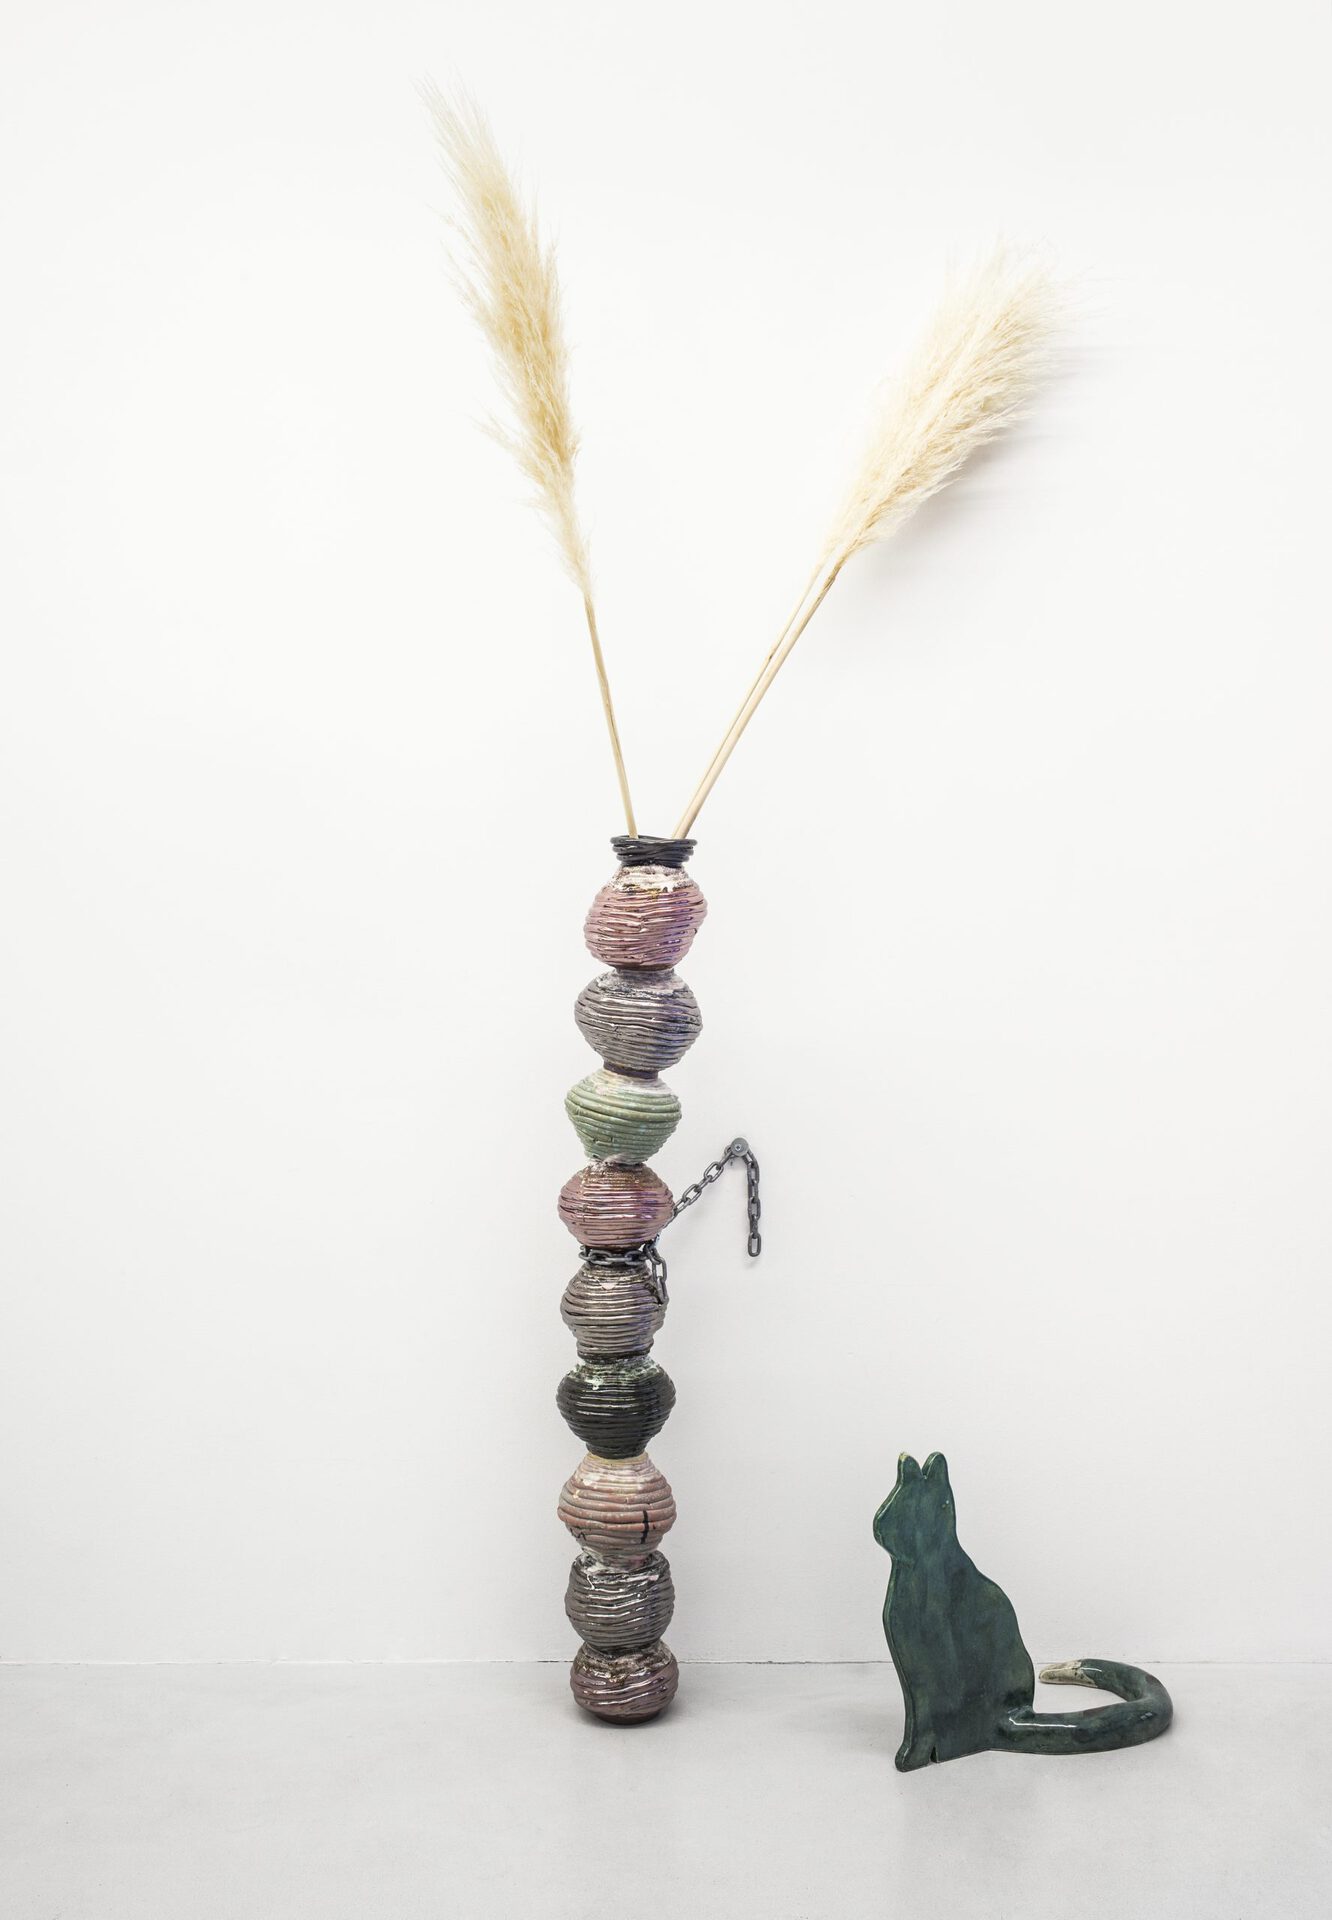 Harry Hachmeister, Gloria in Chains and Esmeralda, glazed ceramics, installation view, Straße im Sonnenlicht, 2020